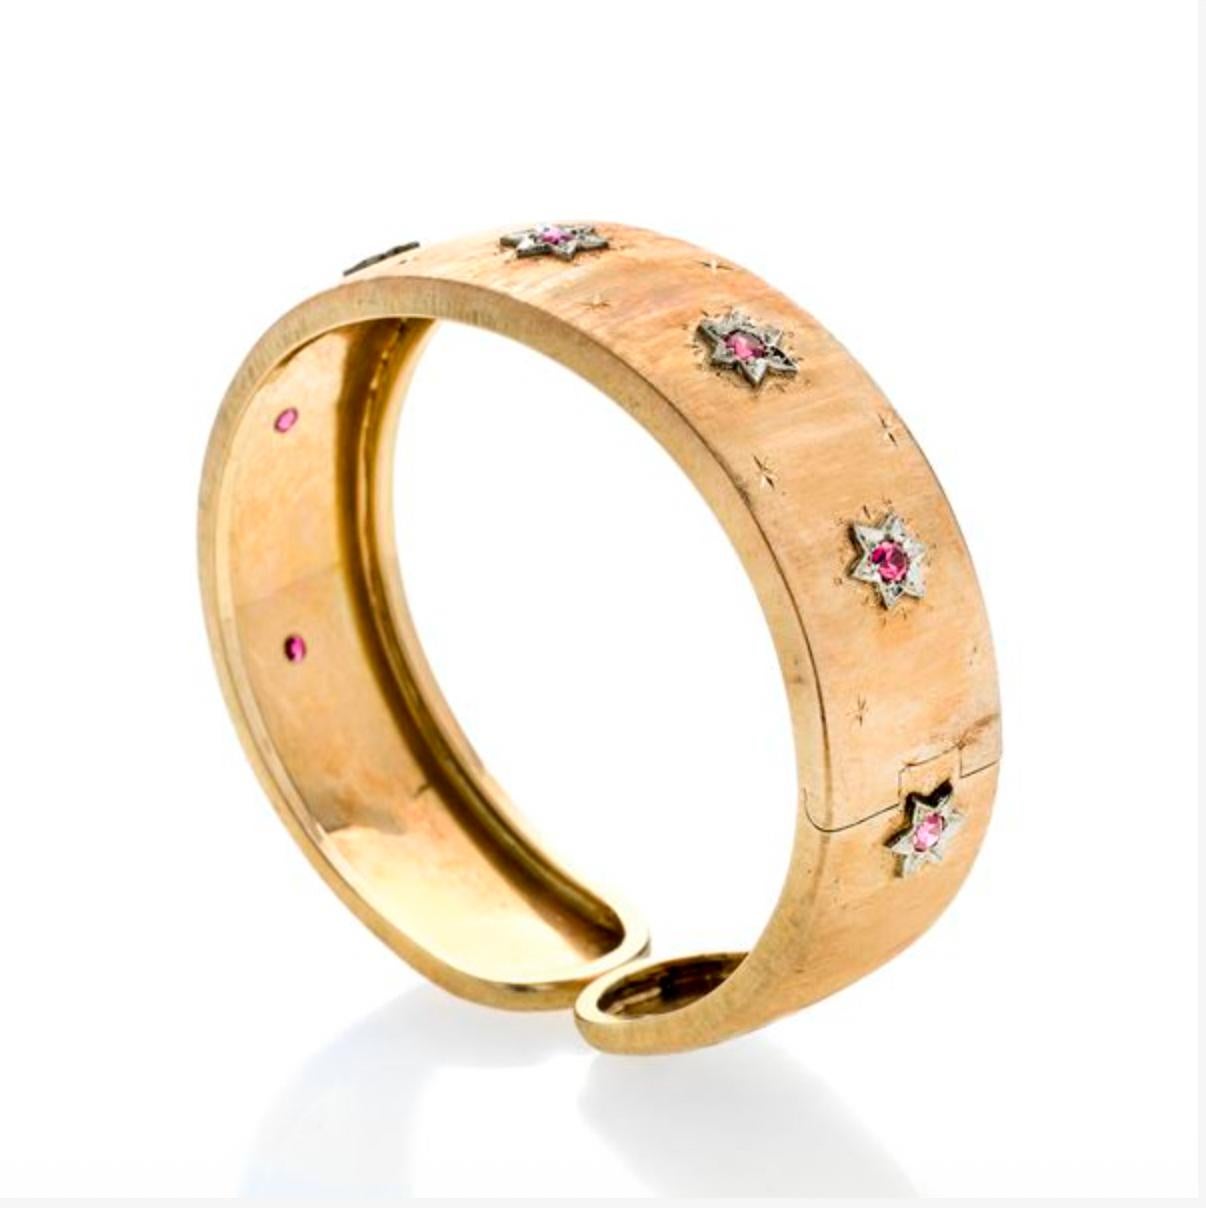 Bracelet bangle de style florentin en or jaune gravé, orné de sept étoiles, chacune avec un petit rubis. Le bracelet peut être ouvert pour s'adapter au poignet.
Fabriqué en Italie, à Florence, dans les années 1990
MESURES : diamètre intérieur 6 cm